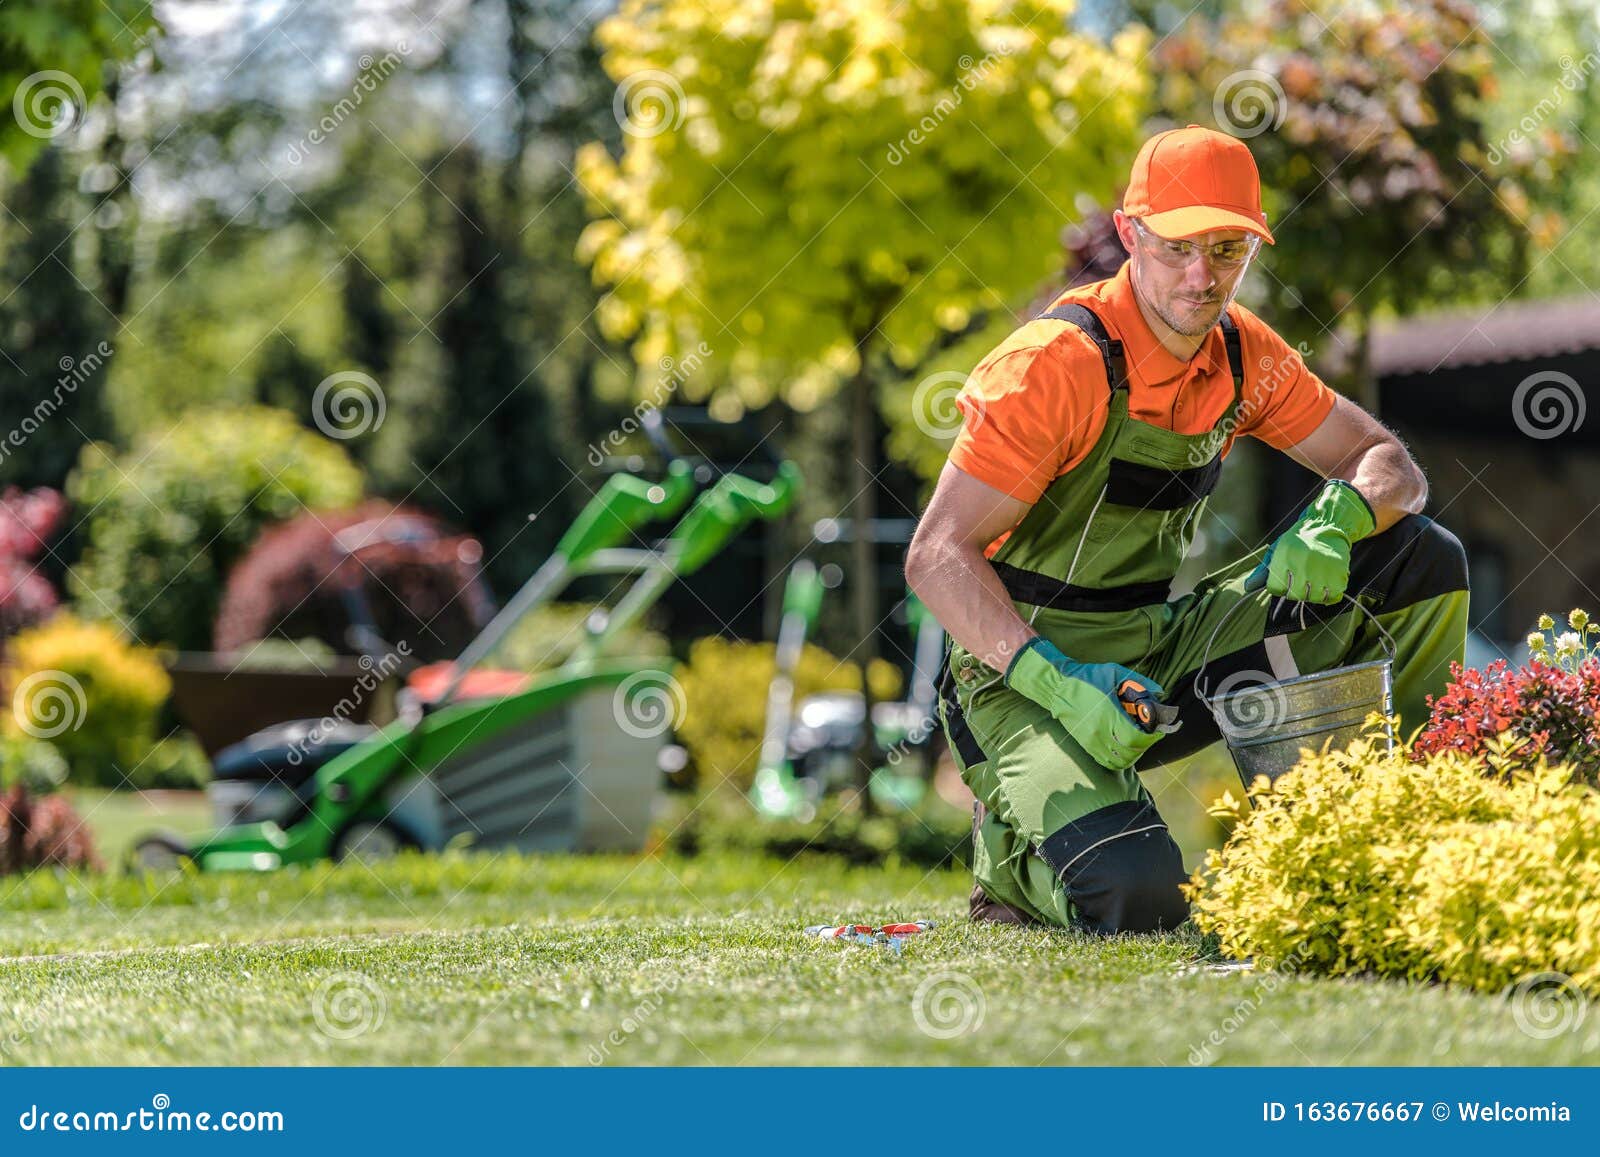 professional caucasian gardener